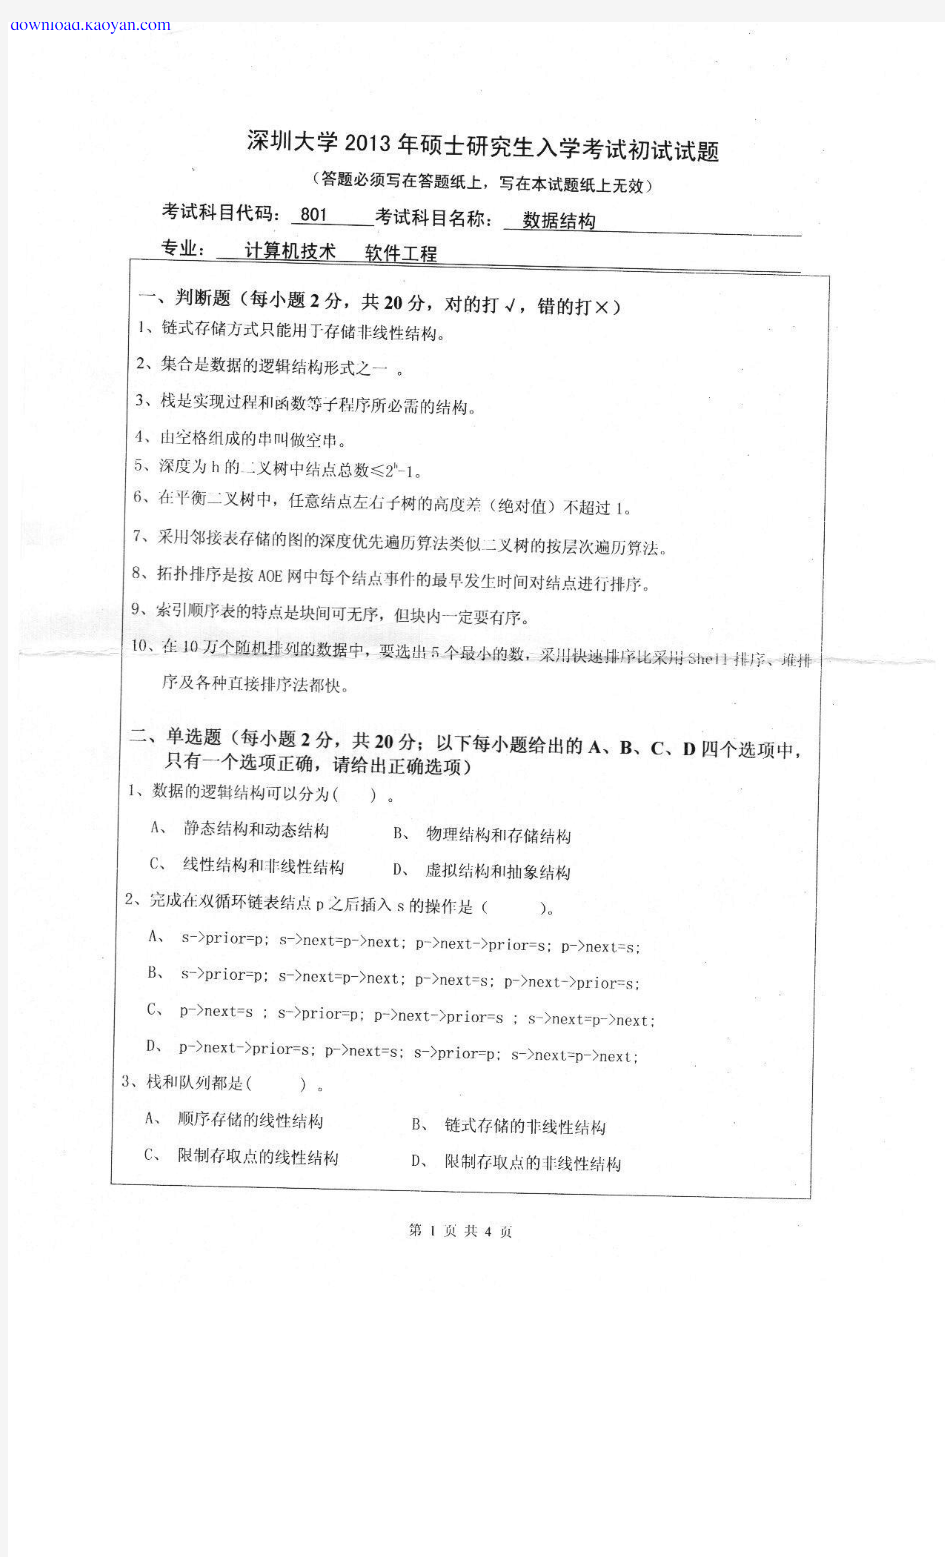 [考试必备]2013年深圳大学801数据结构考研试题